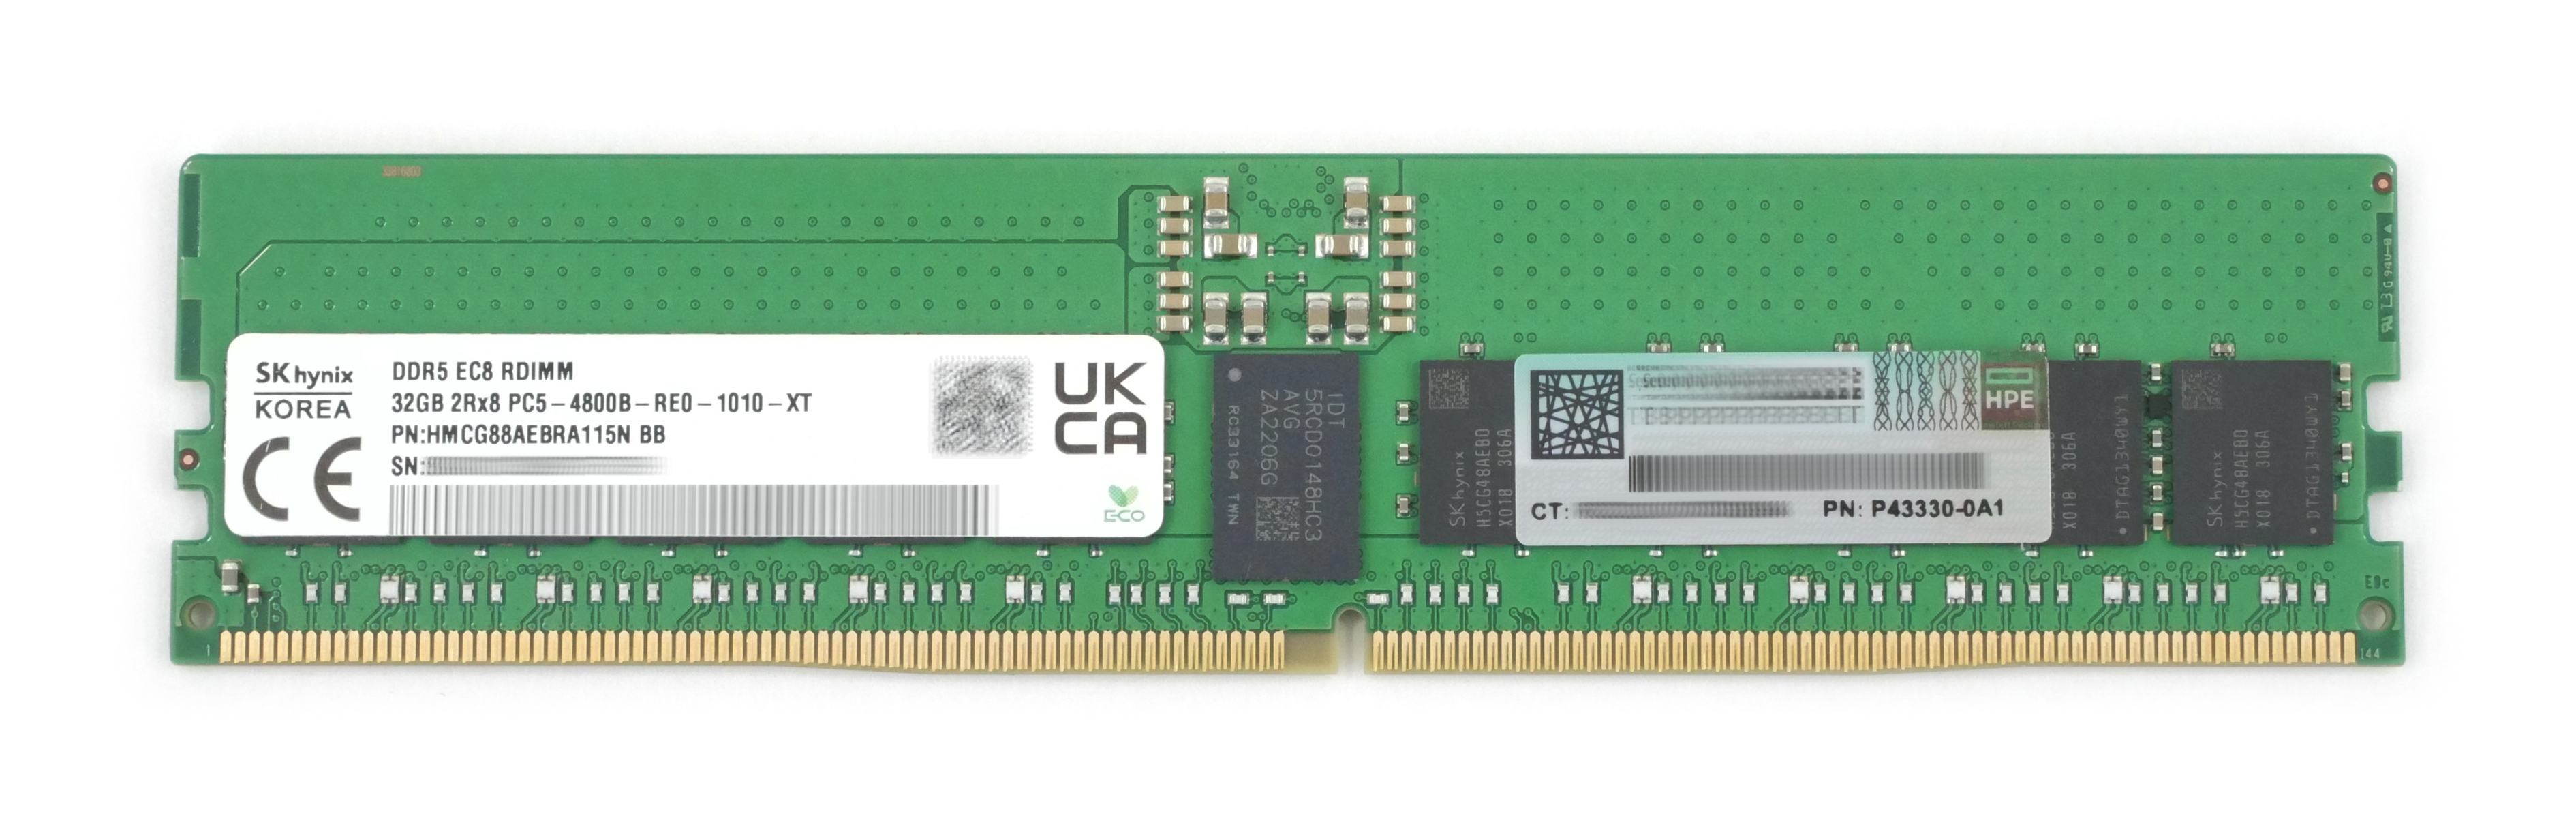 HP Hynix 32GB HMCG88AEBRA115N DDR5 PC5-4800B RDIMM P43330-0A1 745094-001